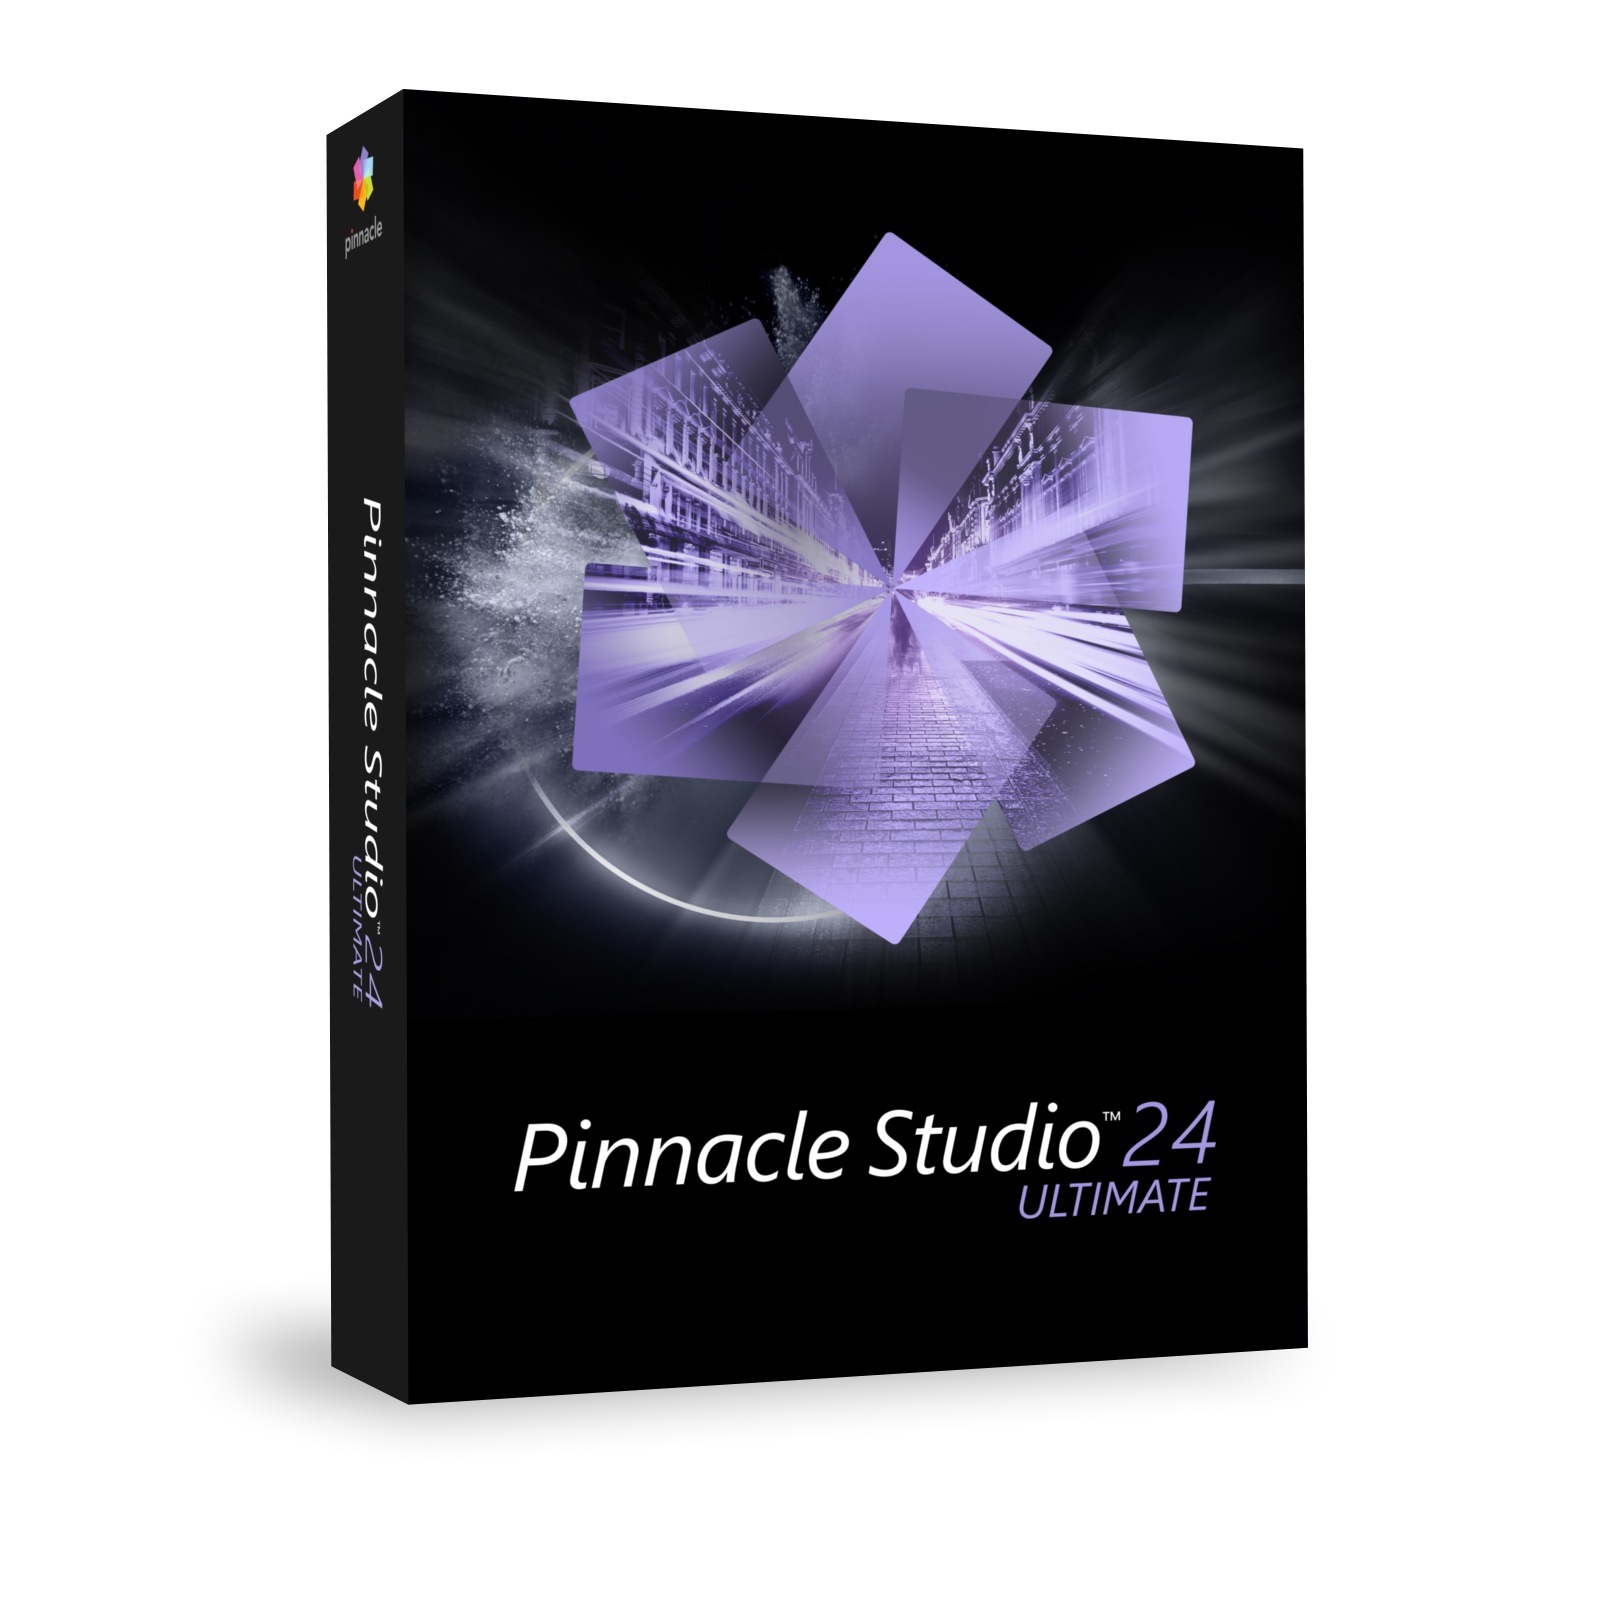 pinnacle studio 21 ultimate box vs download